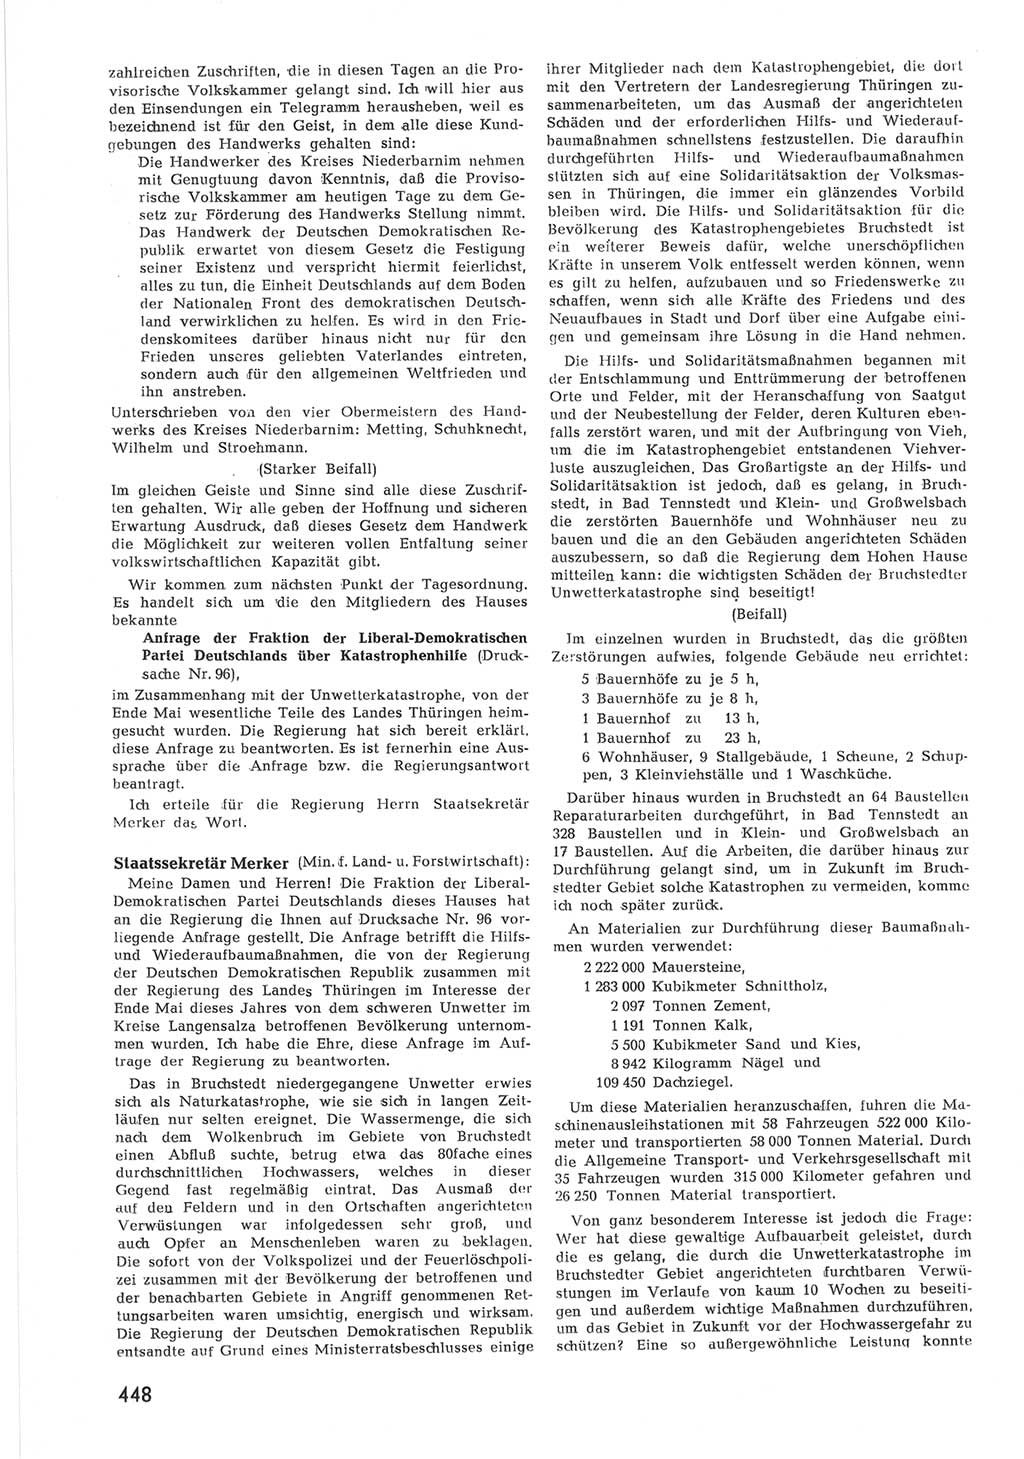 Provisorische Volkskammer (VK) der Deutschen Demokratischen Republik (DDR) 1949-1950, Dokument 466 (Prov. VK DDR 1949-1950, Dok. 466)